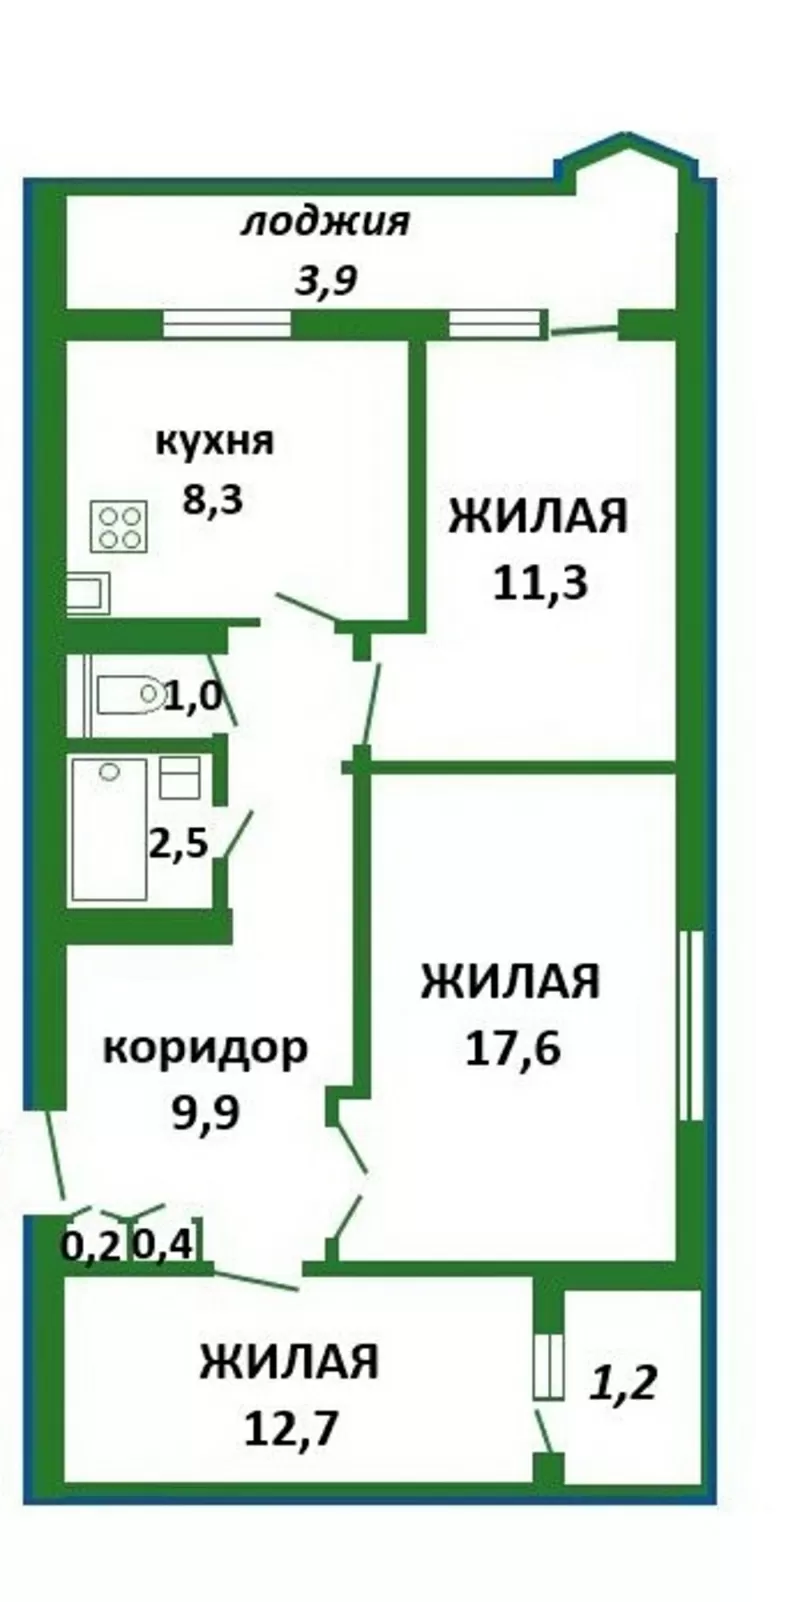 3 комнатная квартира в кирпичном доме по ул. Новгородской 12